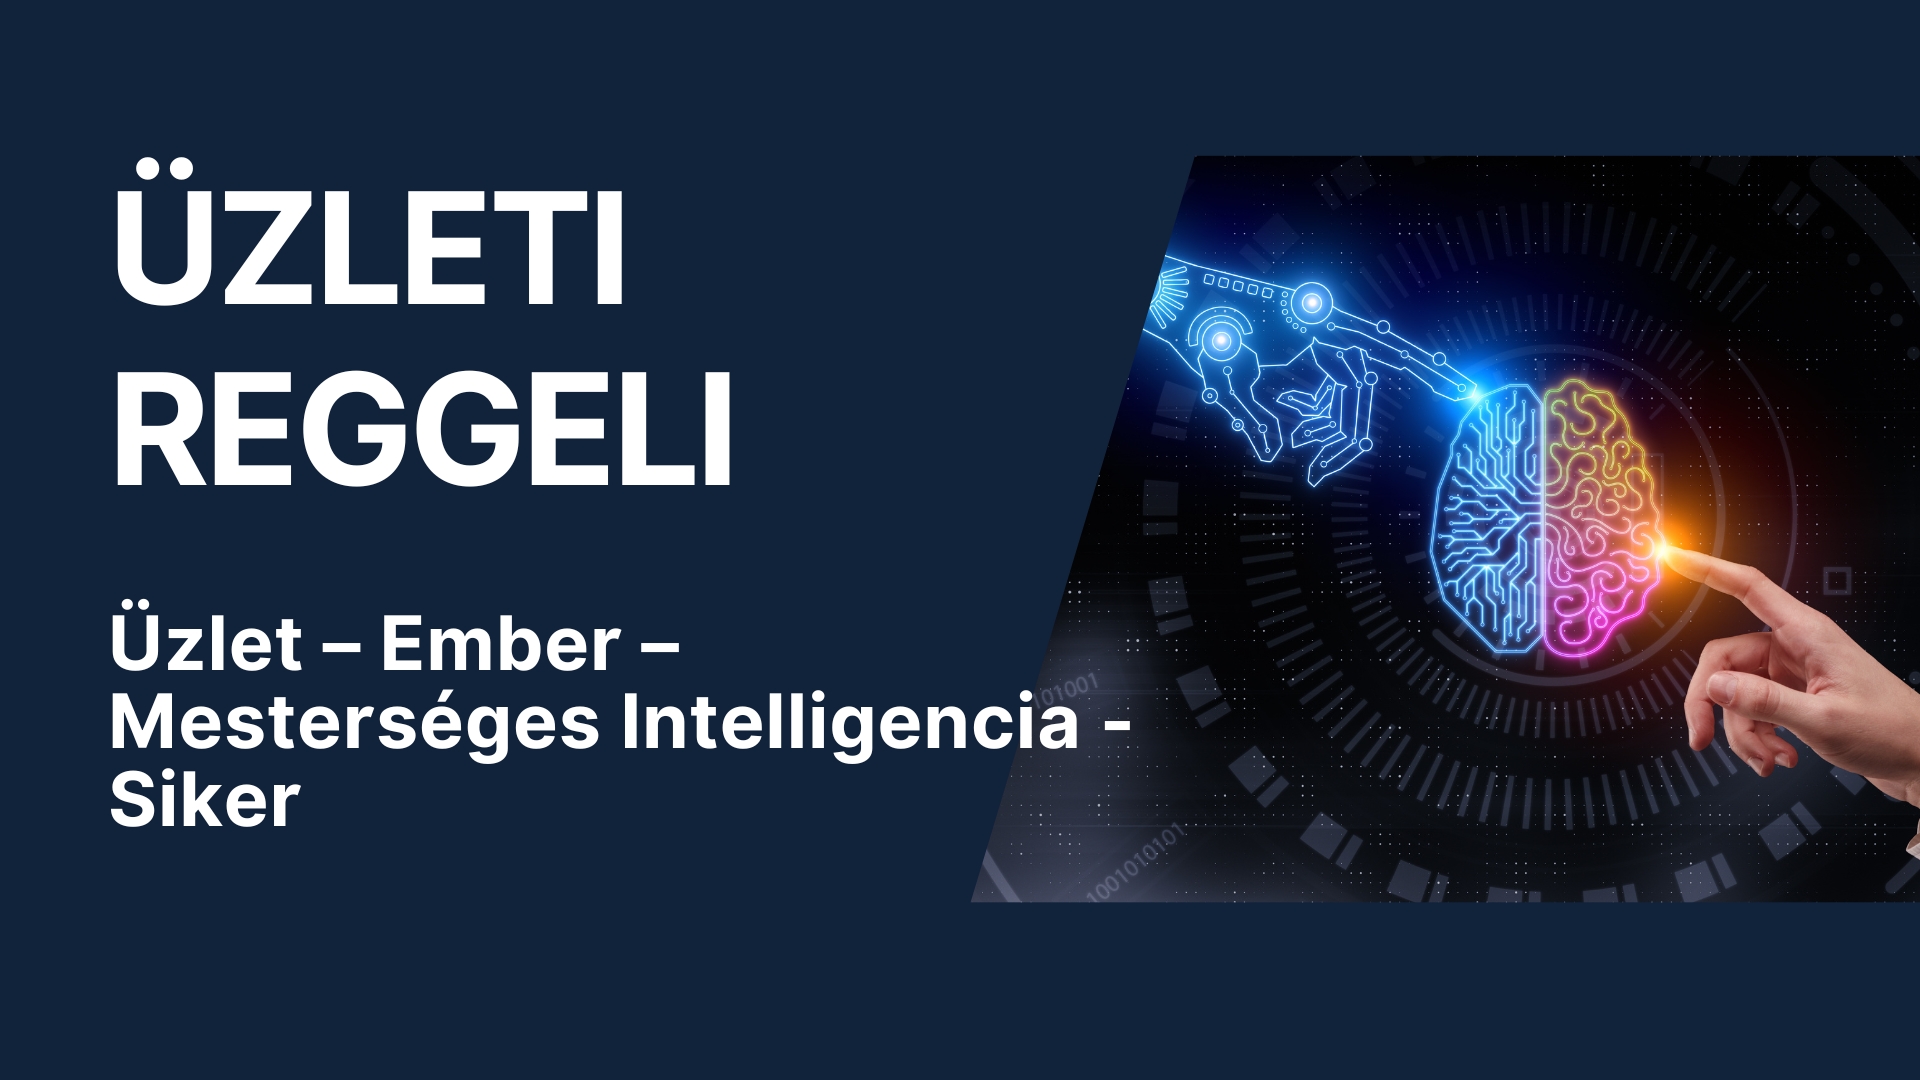 ÜZLETI REGGELI - Üzlet-Ember-Mesterséges Intelligencia-Siker - 3 helyszínen: Baja, Kalocsa, Kiskunhalas